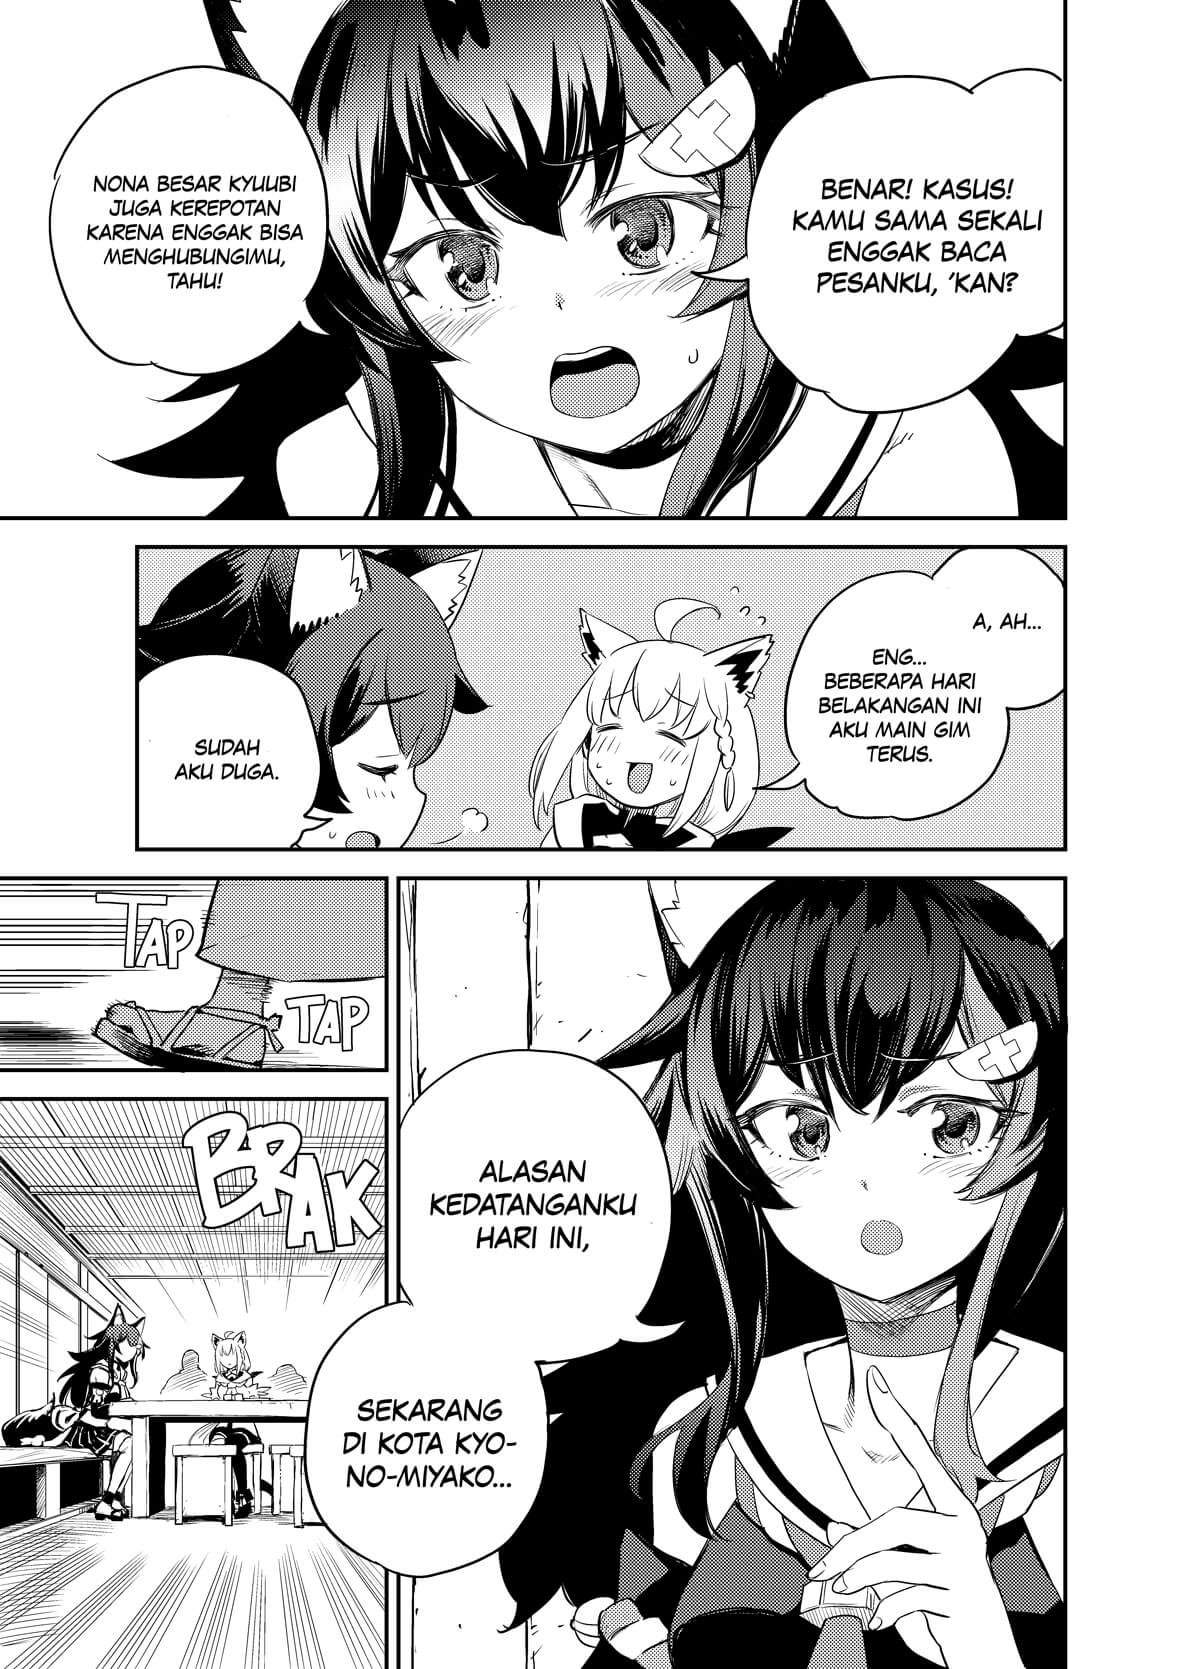 Holoearth Chronicles Side:E ~Yamato Phantasia~ Chapter 1.3